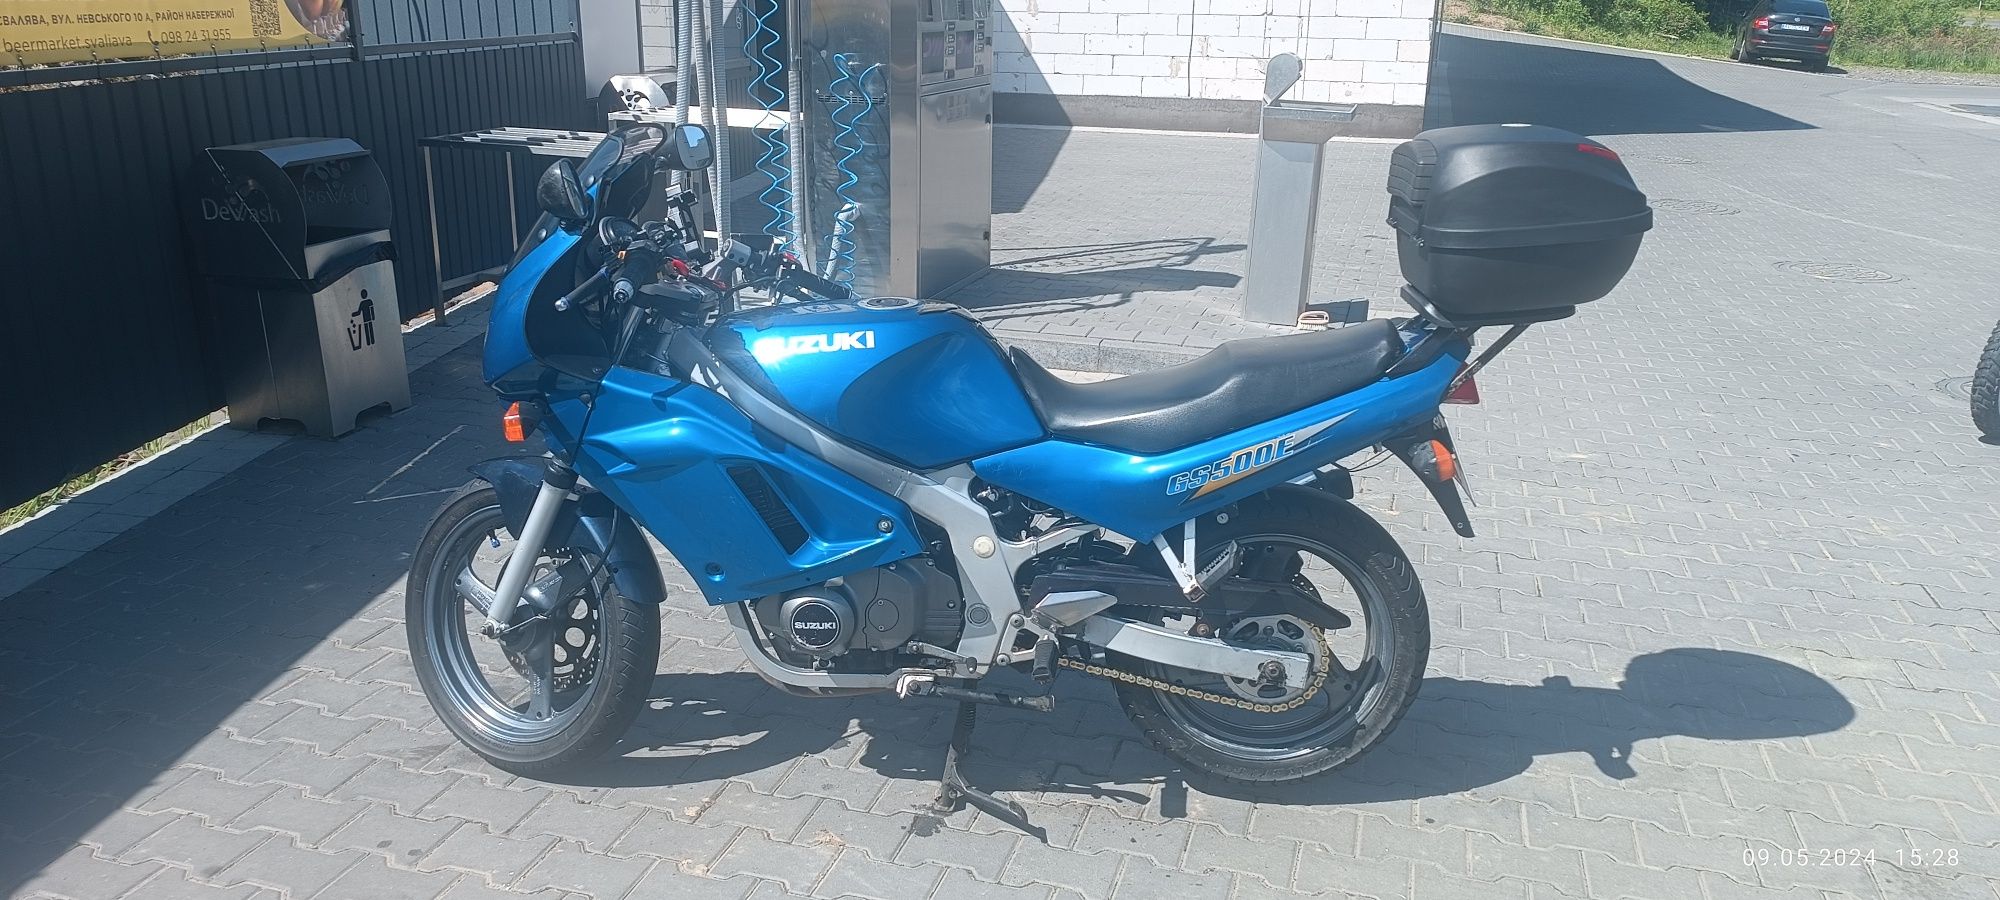 Мотоцикл Suzuki gs500